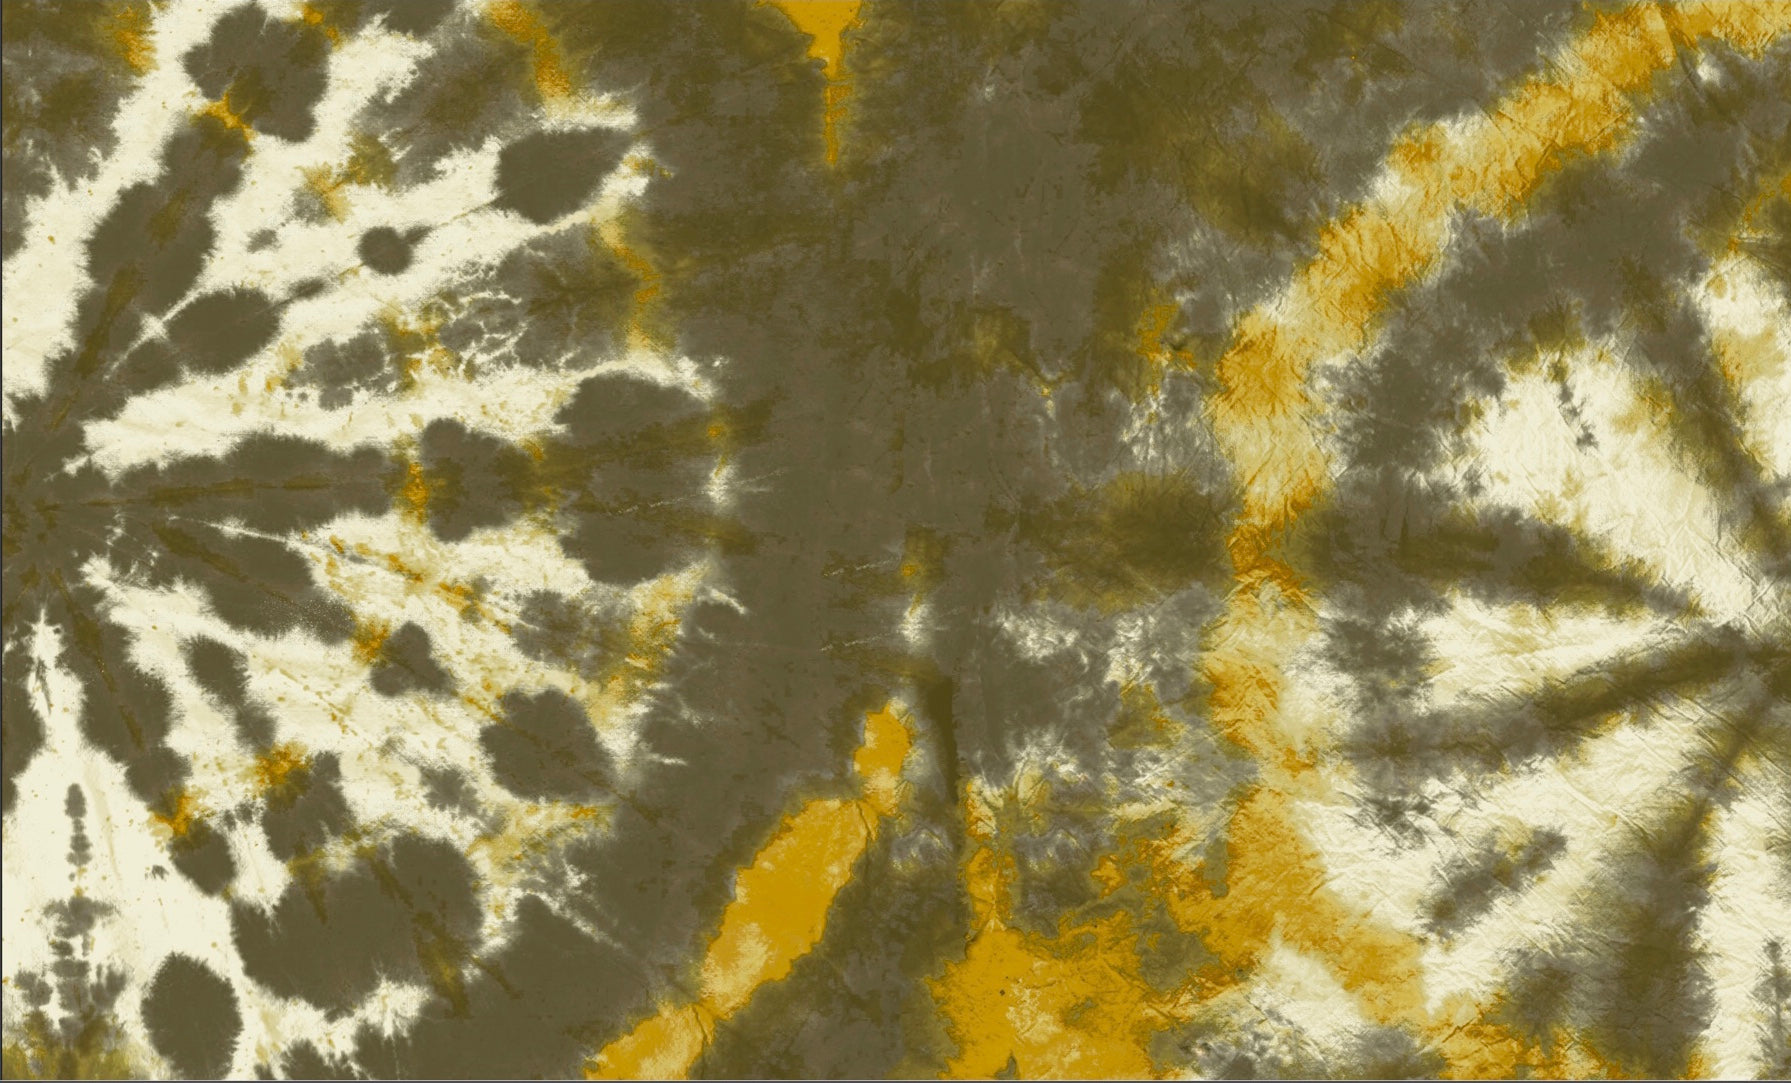 Tie dye circle Wallpaper - Khaki / Mustard